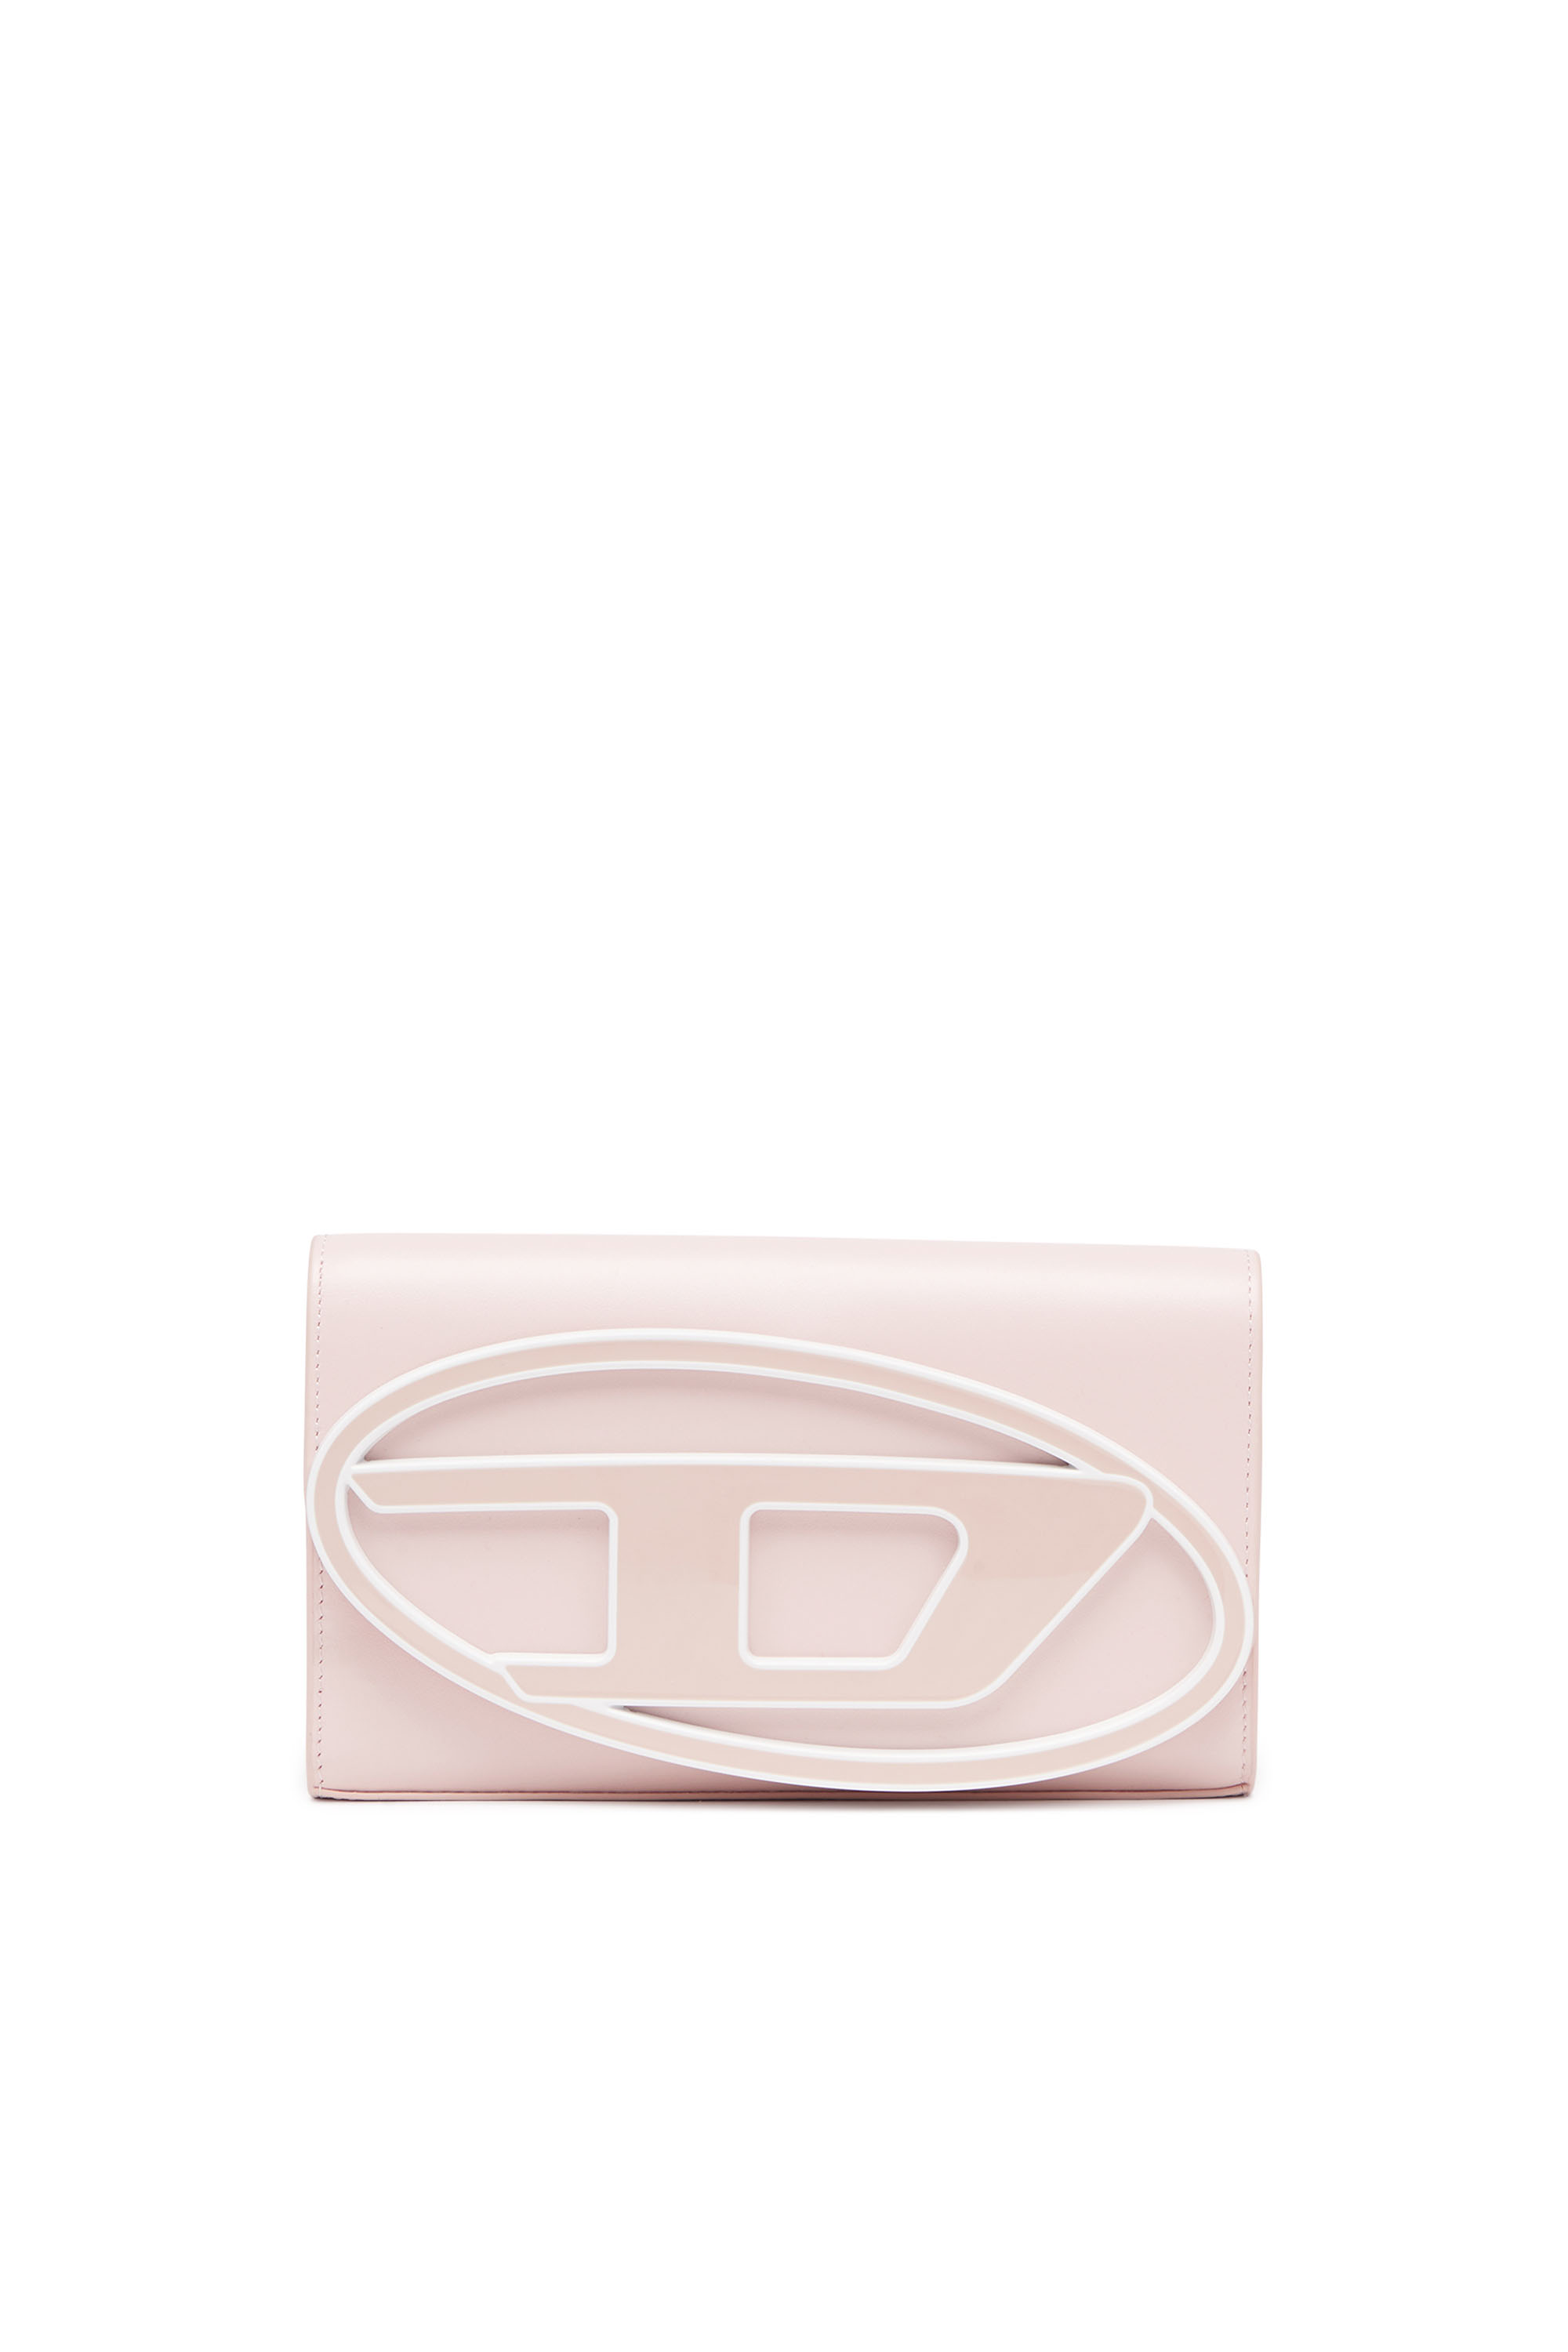 Diesel - Portemonnaie-Tasche aus pastellfarbenem Leder - Schmuck und Gadgets - Damen - Rosa